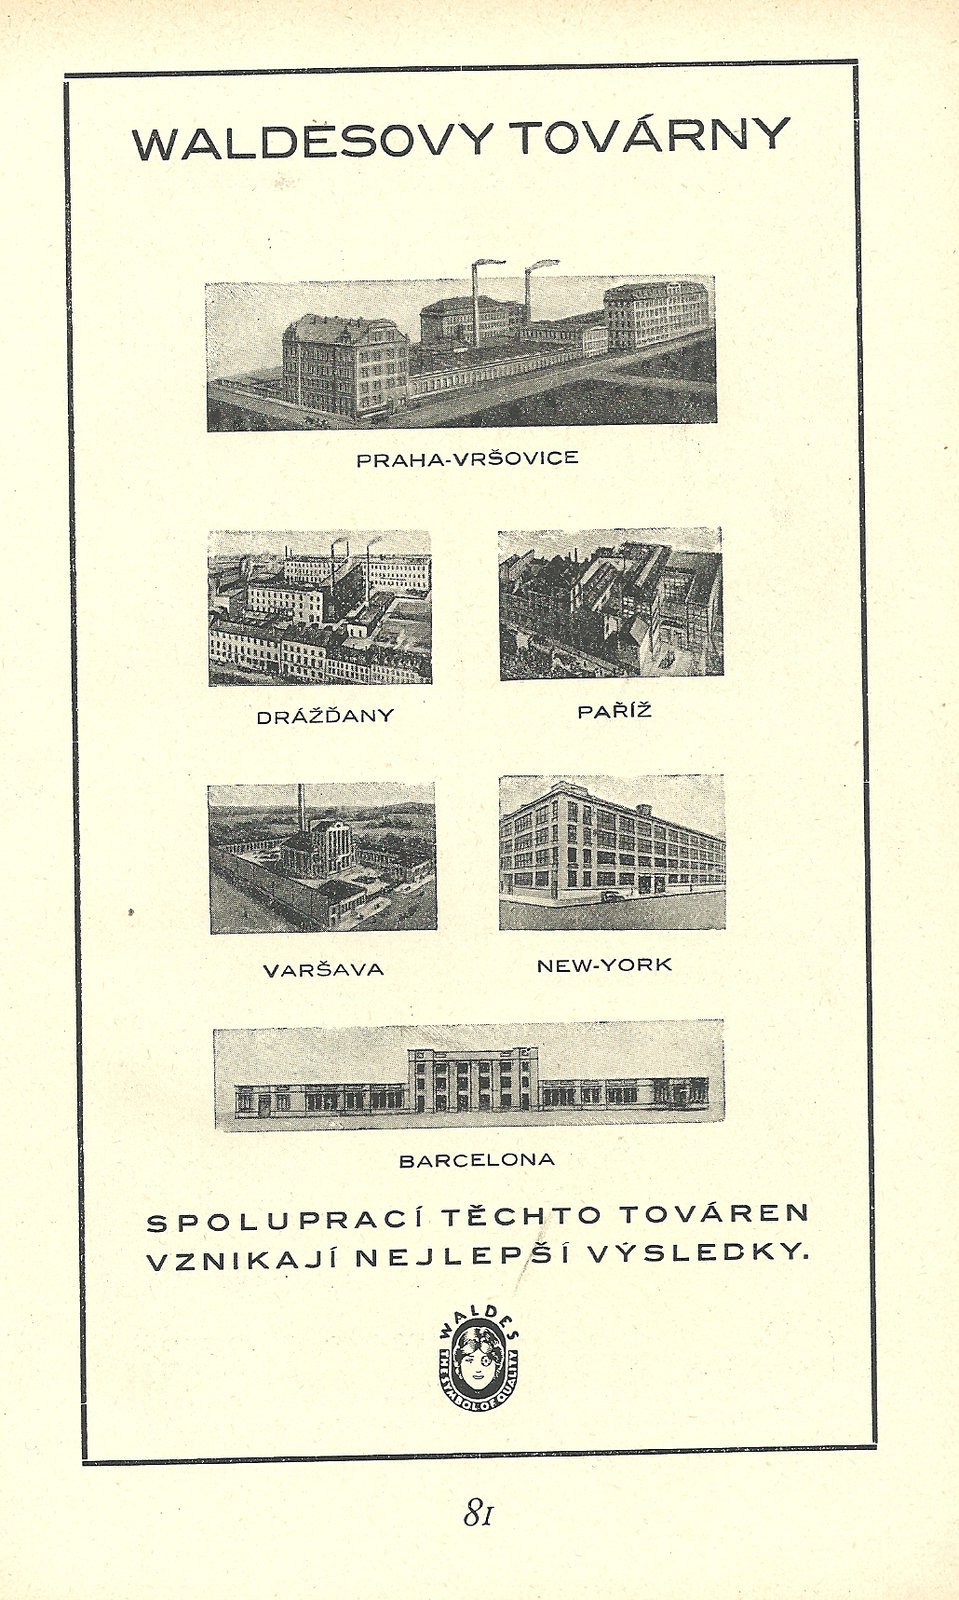 Waldesovy továrny byly známé po celém světě.